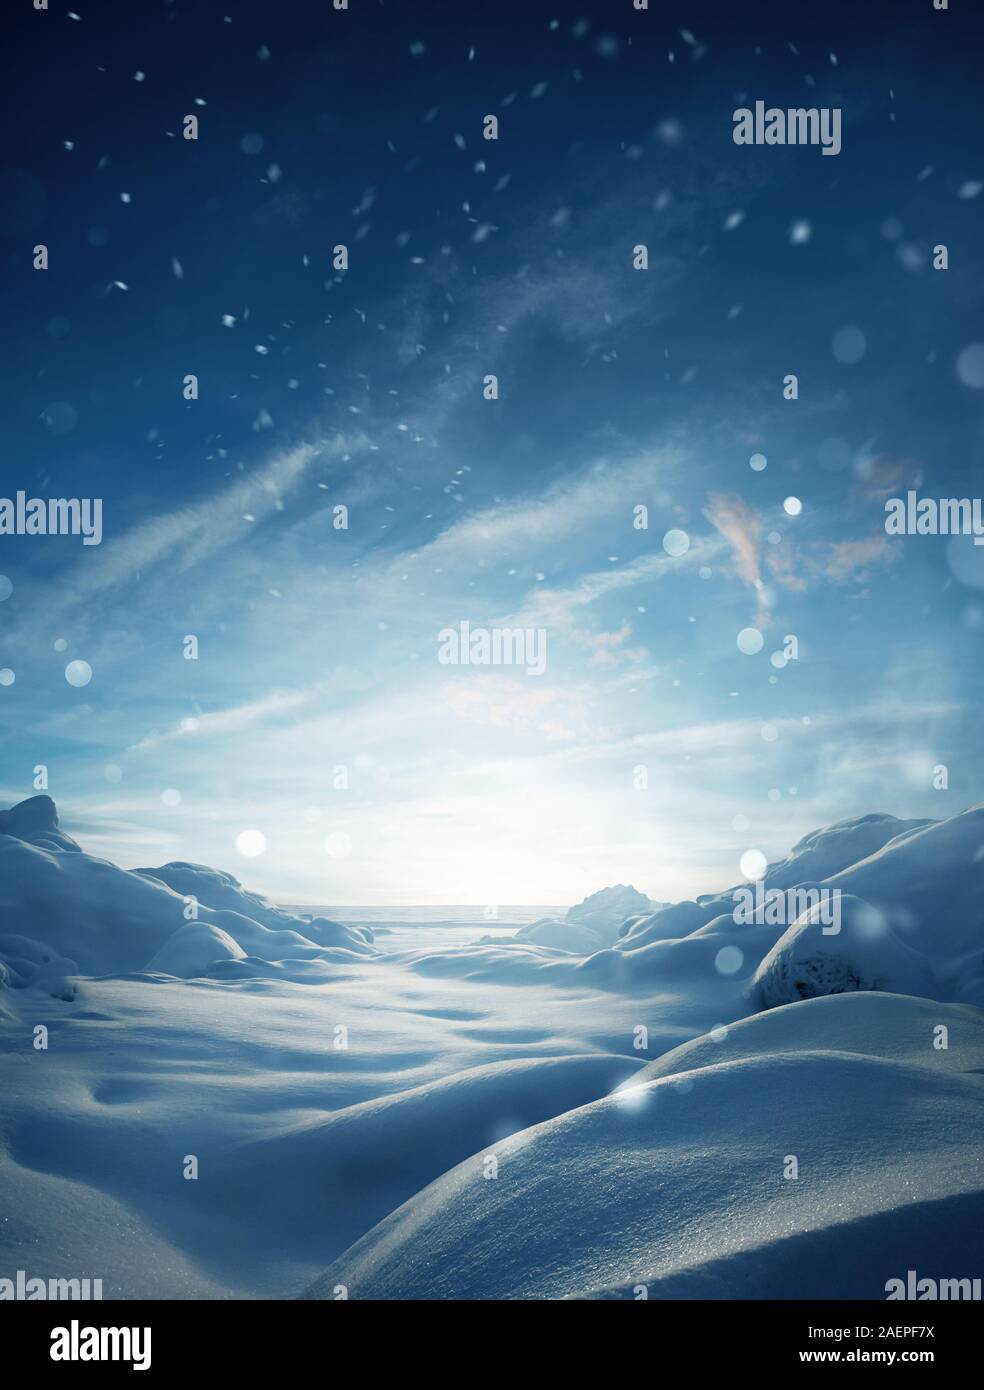 Un paysage couvert de neige hiver mystique fond de Noël avec des particules de neige tomber. Banque D'Images